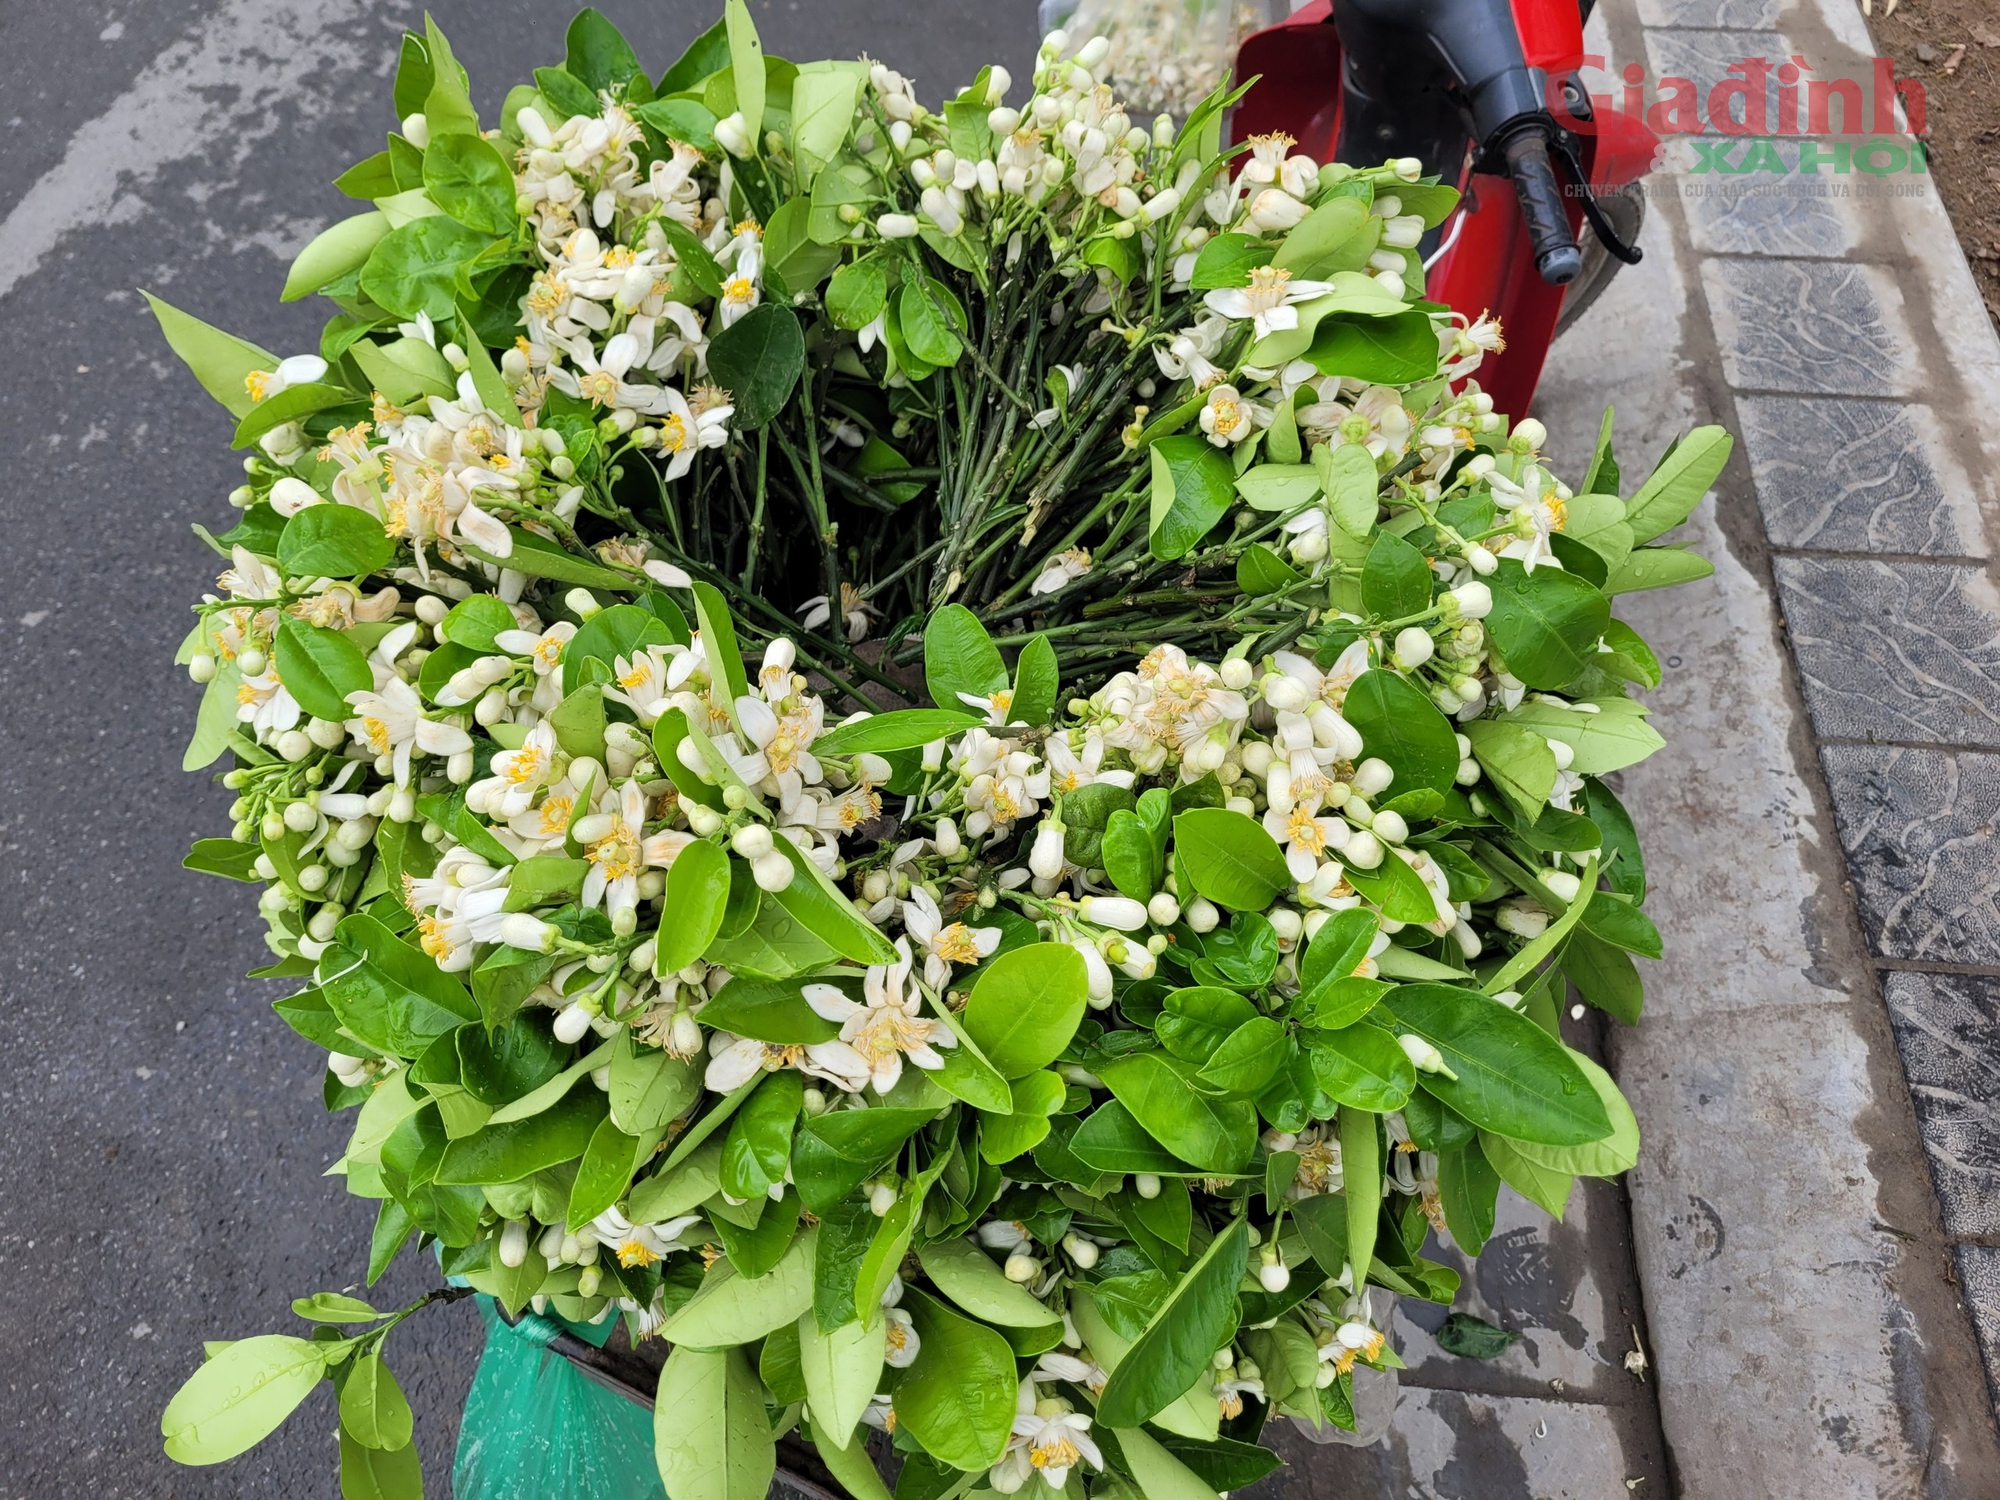 Hoa Bưởi đầu mùa ở Hà Nội thơm ngát phố bán nửa triệu đồng/kg vẫn đắt hàng- Ảnh 3.